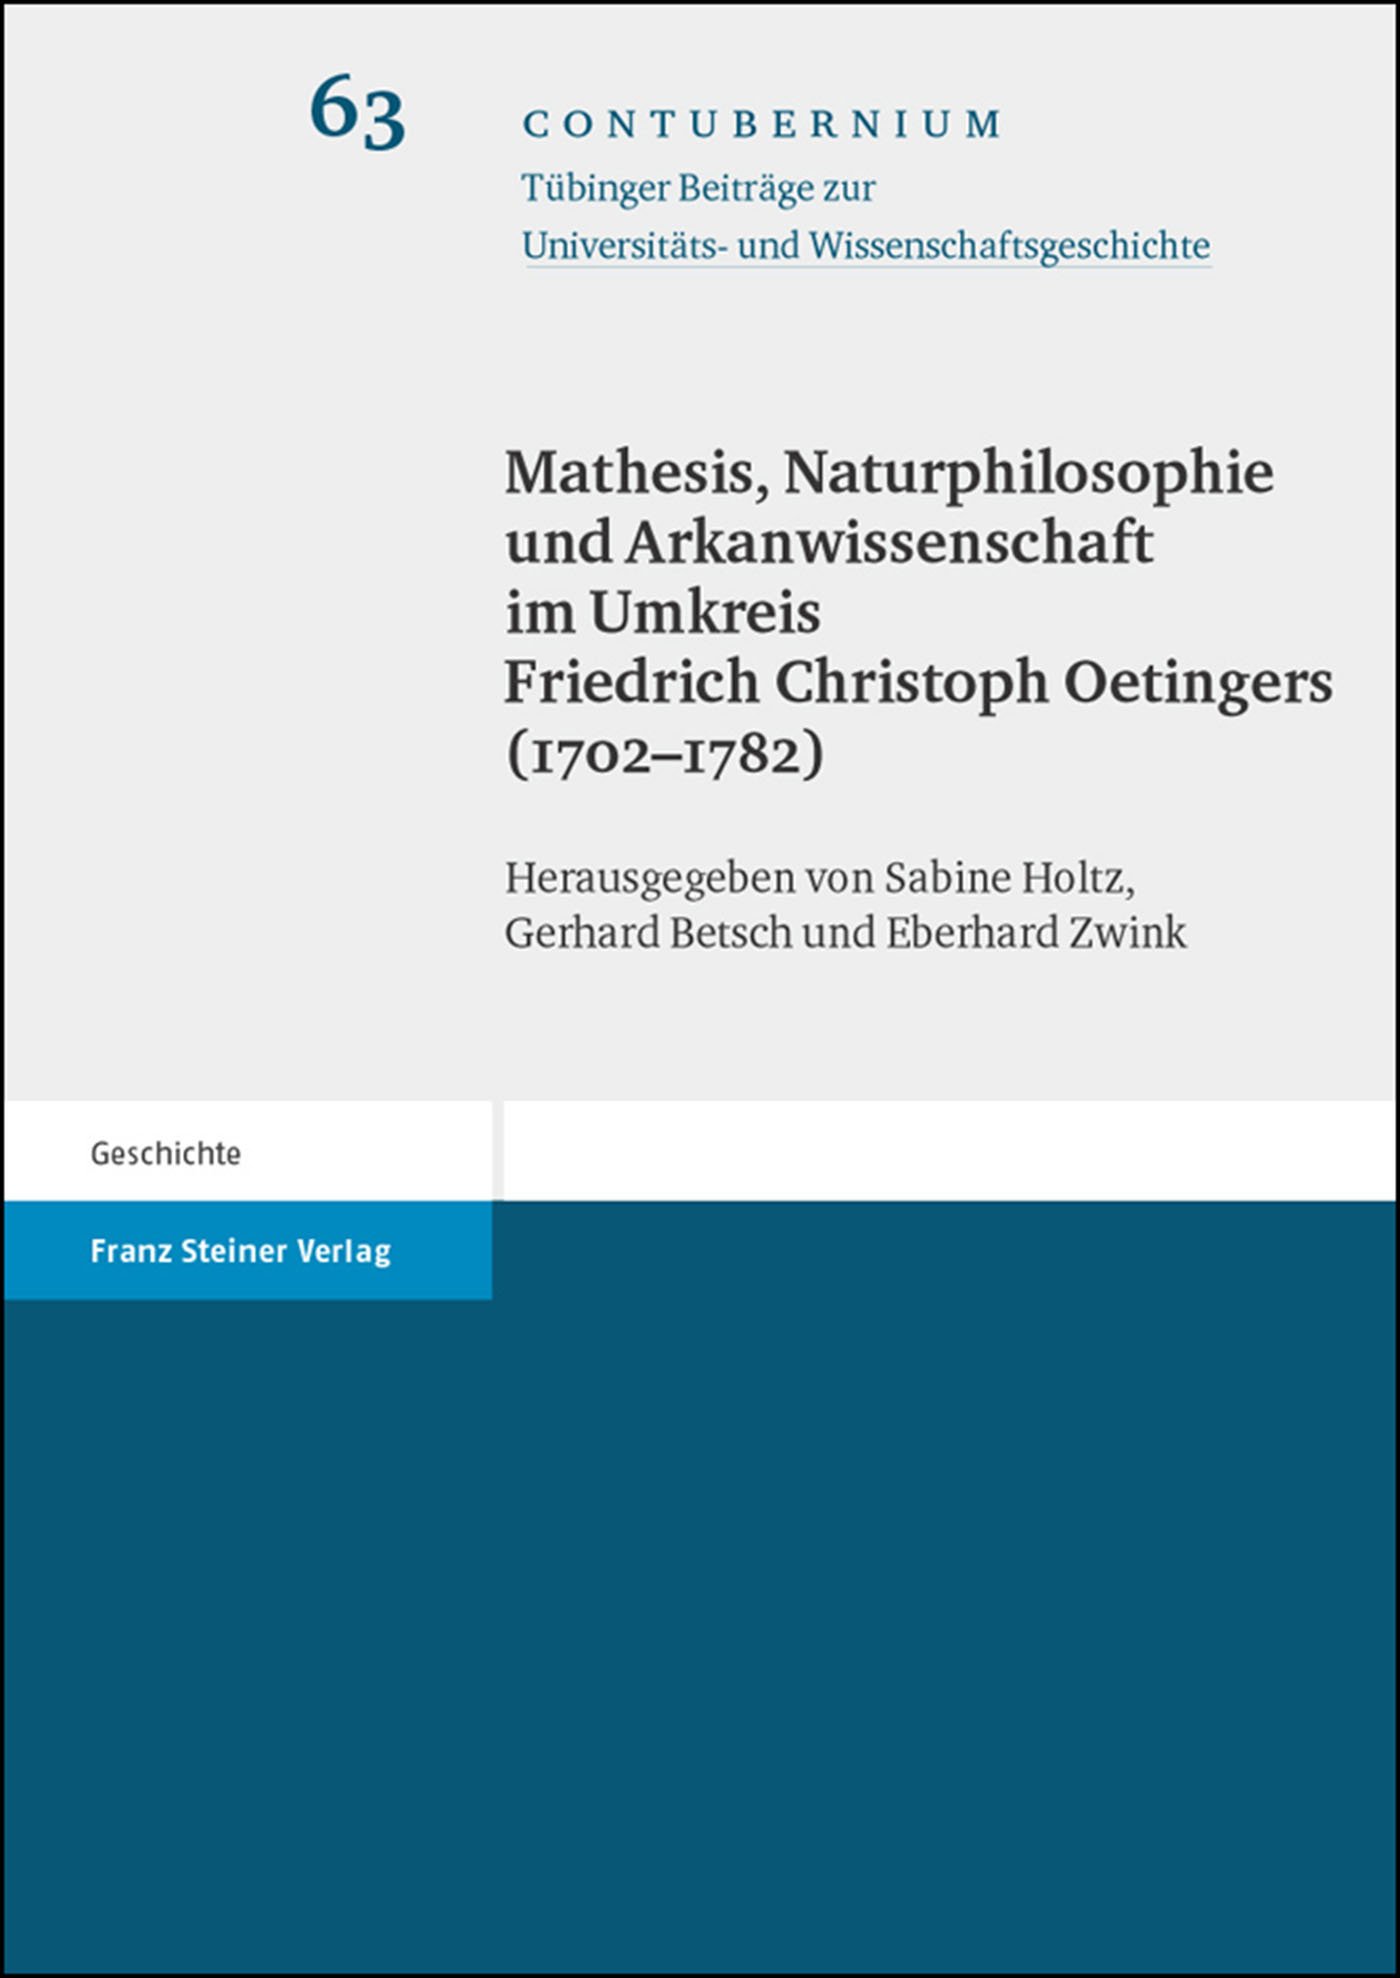 Mathesis, Naturphilosophie und Arkanwissenschaft im Umkreis Friedrich Christoph Oetingers (1702-1782)